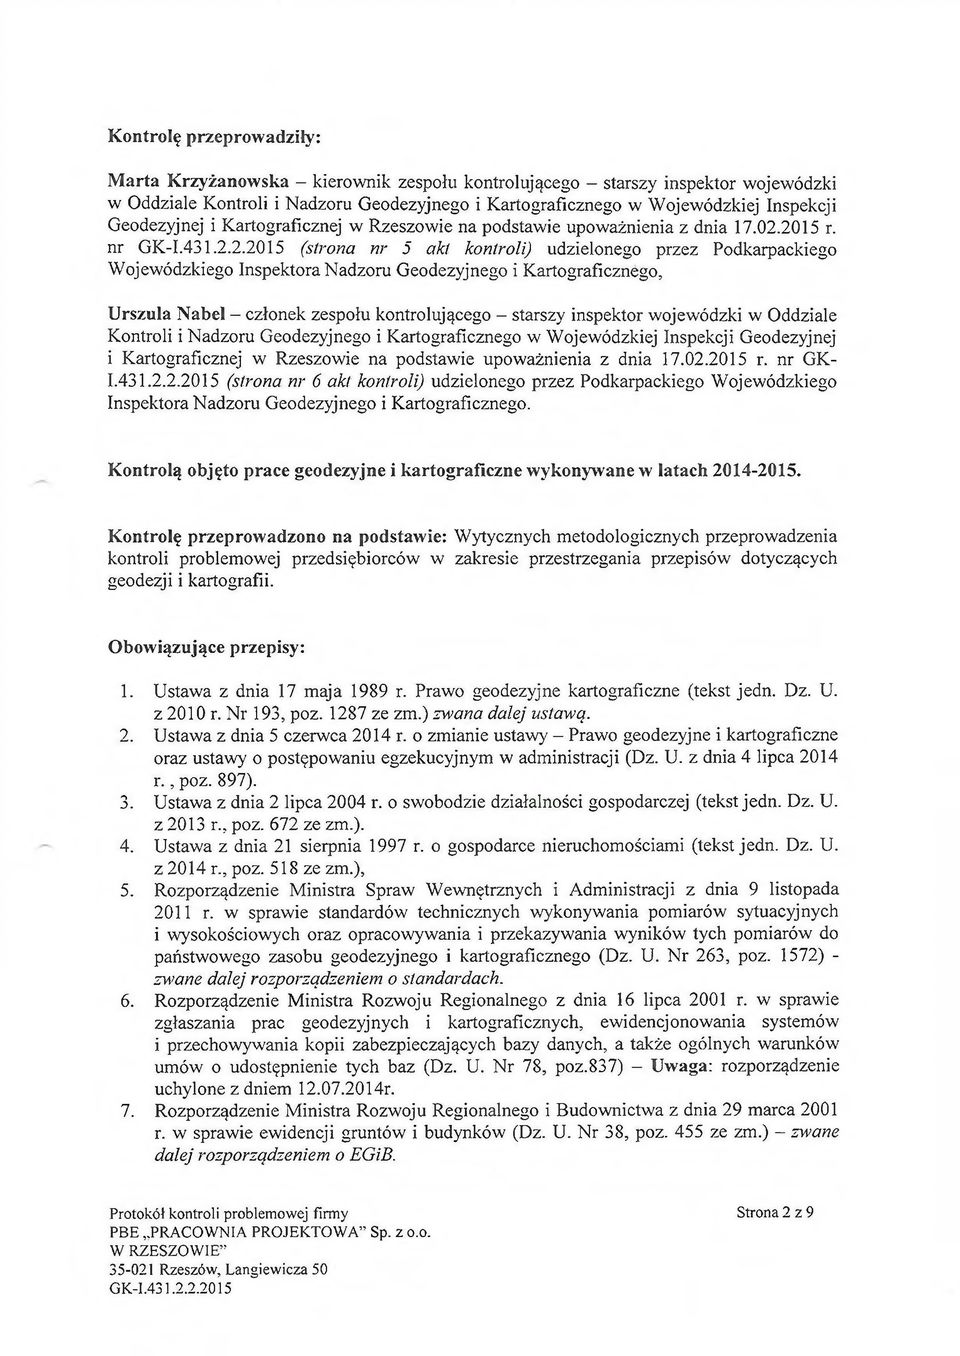 2015 r. nr GK-I.431.2.2.2015 (strona nr 5 akt kontroli) udzielonego przez Podkarpackiego Wojewódzkiego Inspektora Nadzoru Geodezyjnego i Kartograficznego, Urszula Nabel - członek zespołu